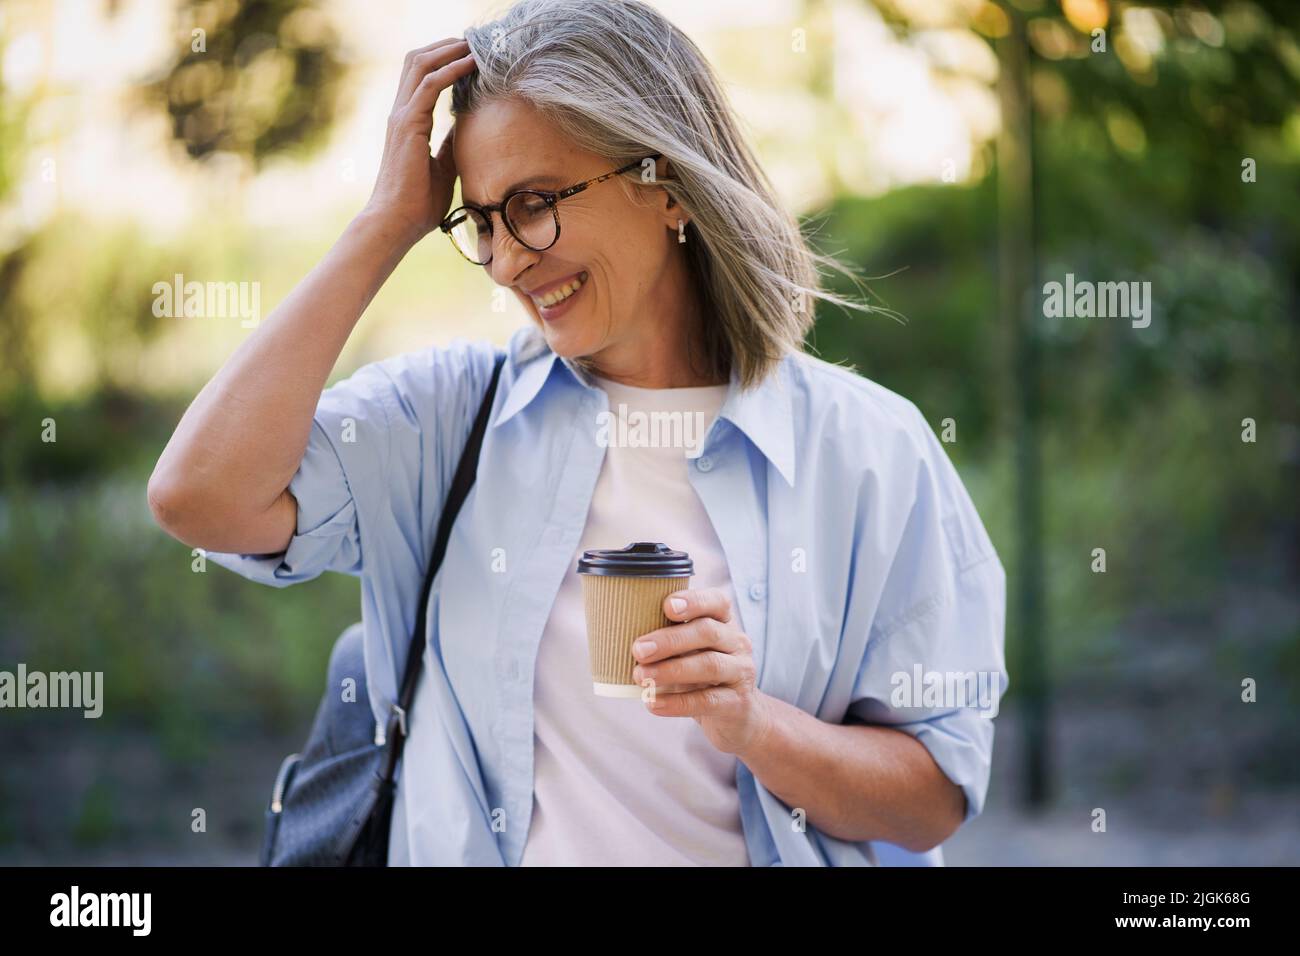 Charmante reife Frau trinkt Kaffee auf dem Weg Fixierung ihre Haare. Die reife Frau verbringt ihre Freizeit in der europäischen Altstadt und genießt eine Tasse Tee und Kaffee. Grauhaarige Frau in Casual mit Rucksack. Stockfoto